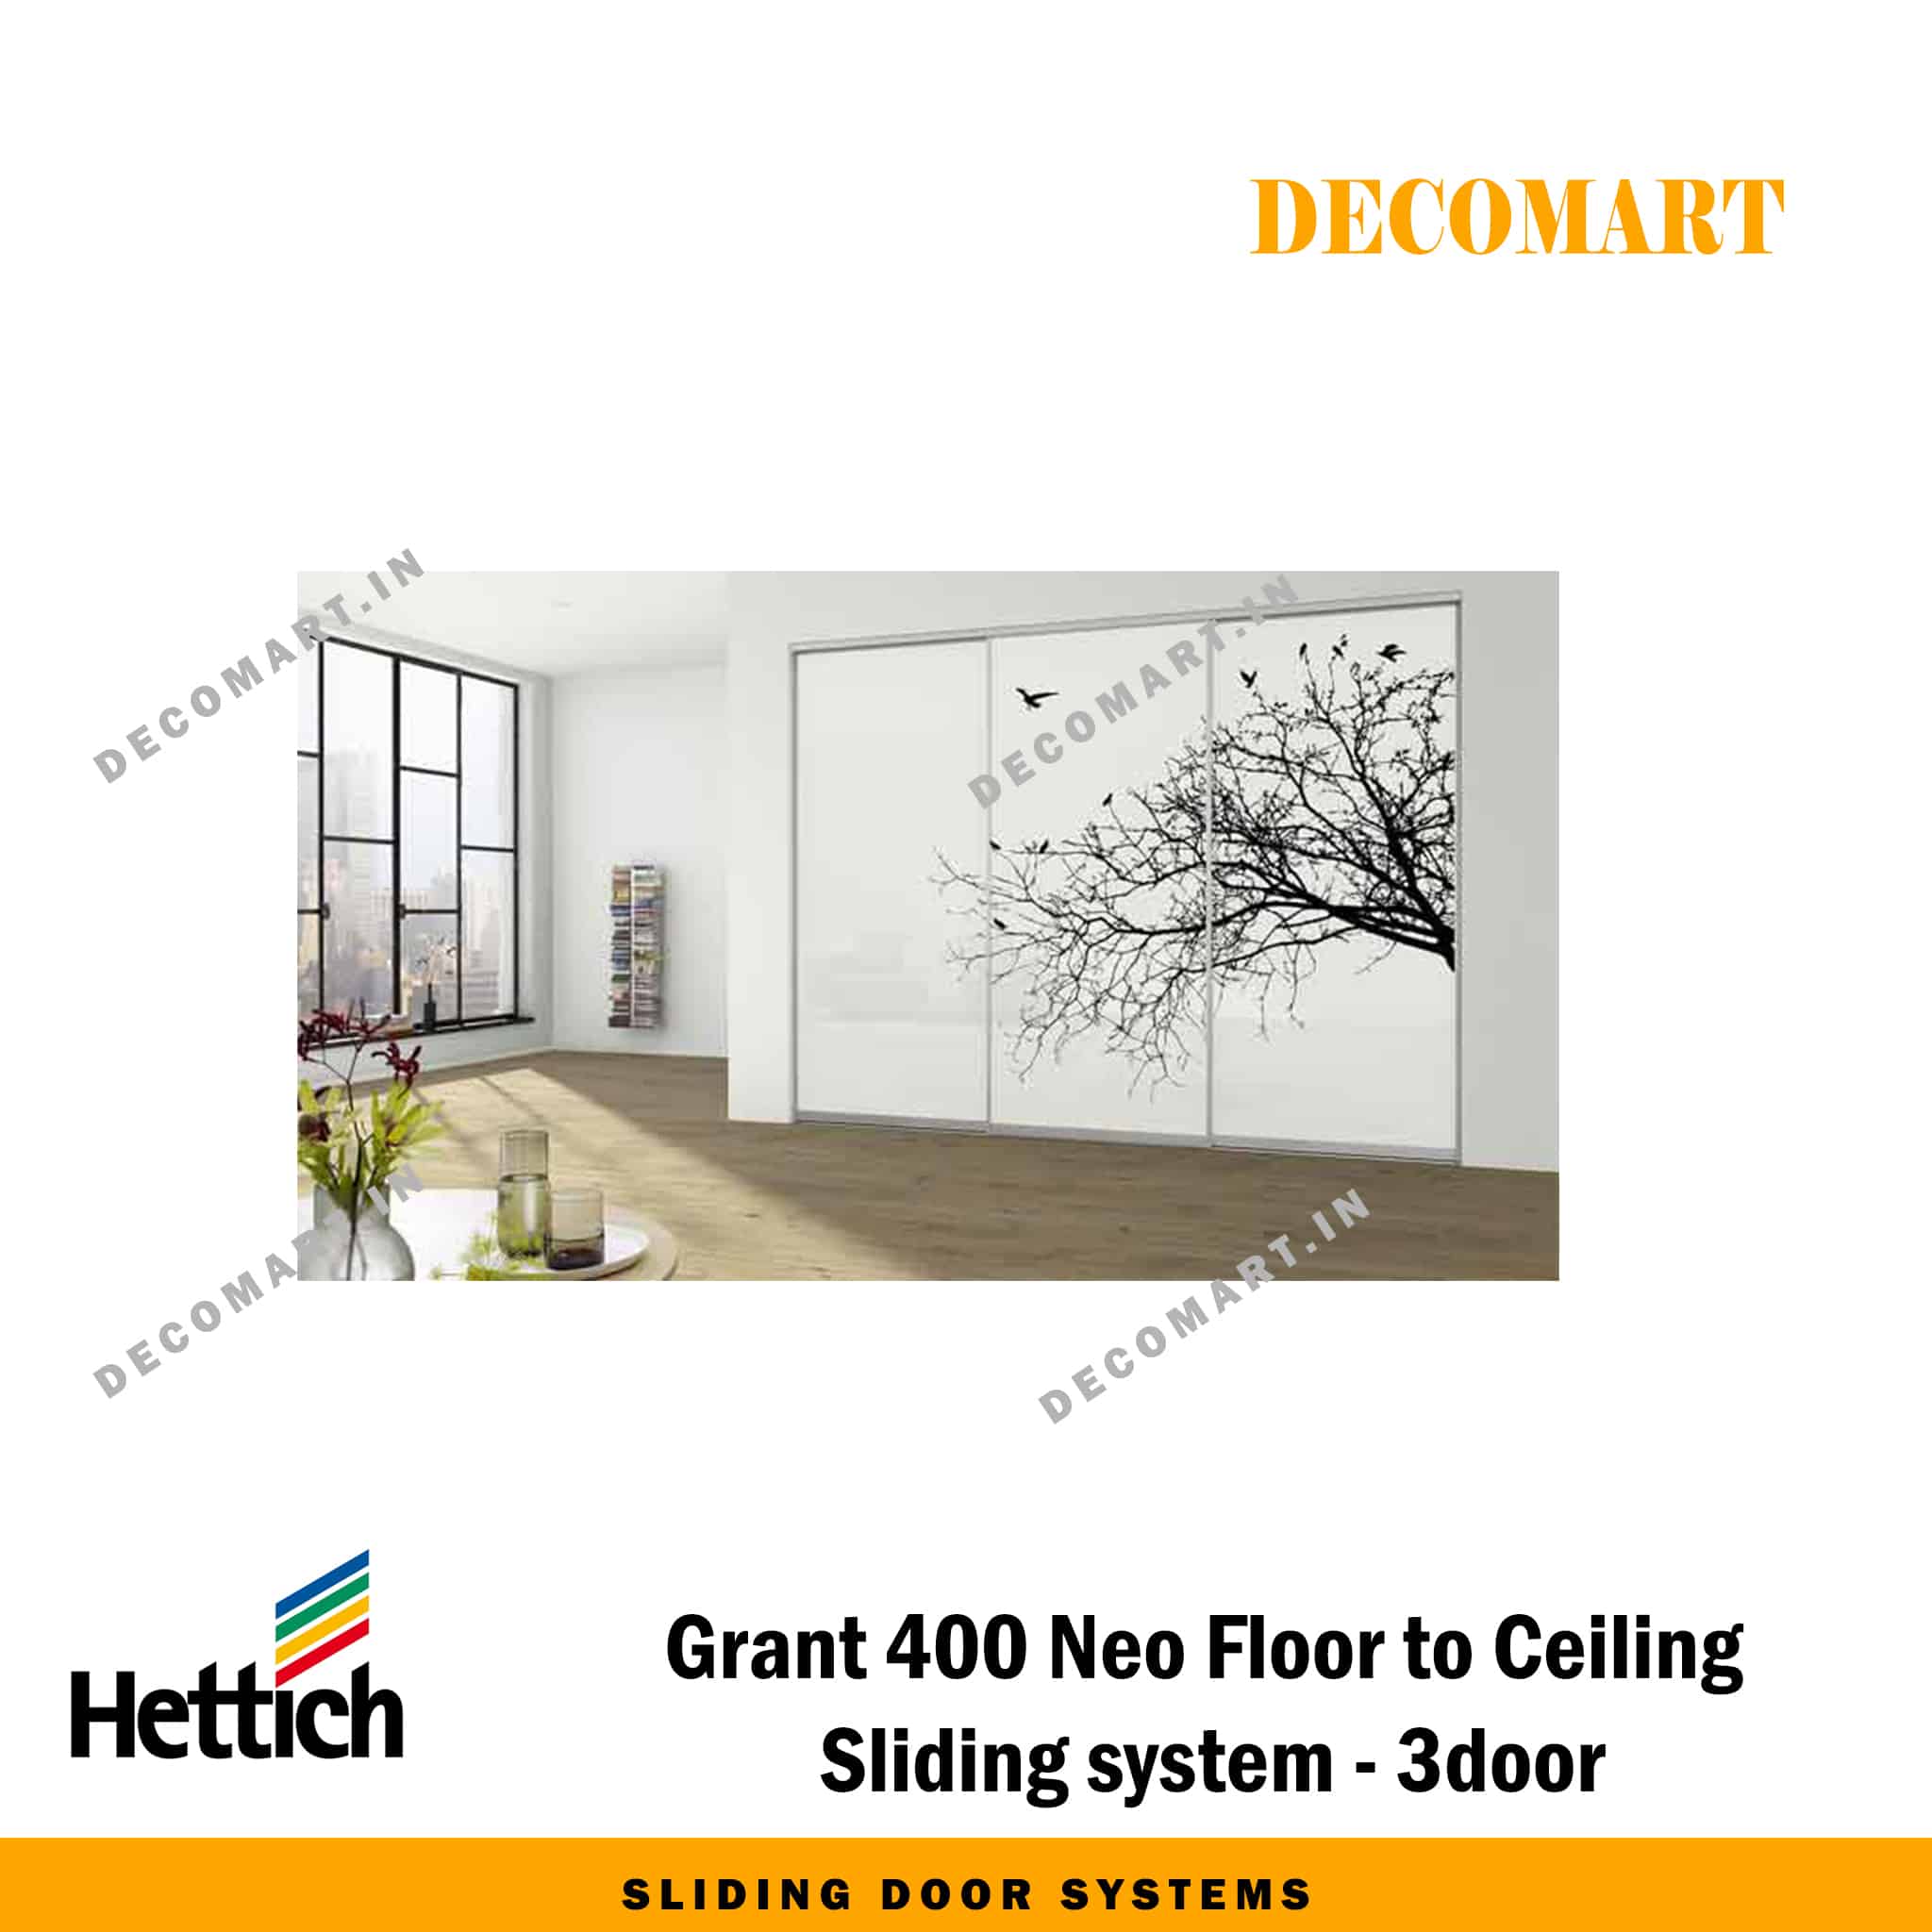 Hettich Grant 400 Neo Floor to Ceiling Sliding System - 3 Door